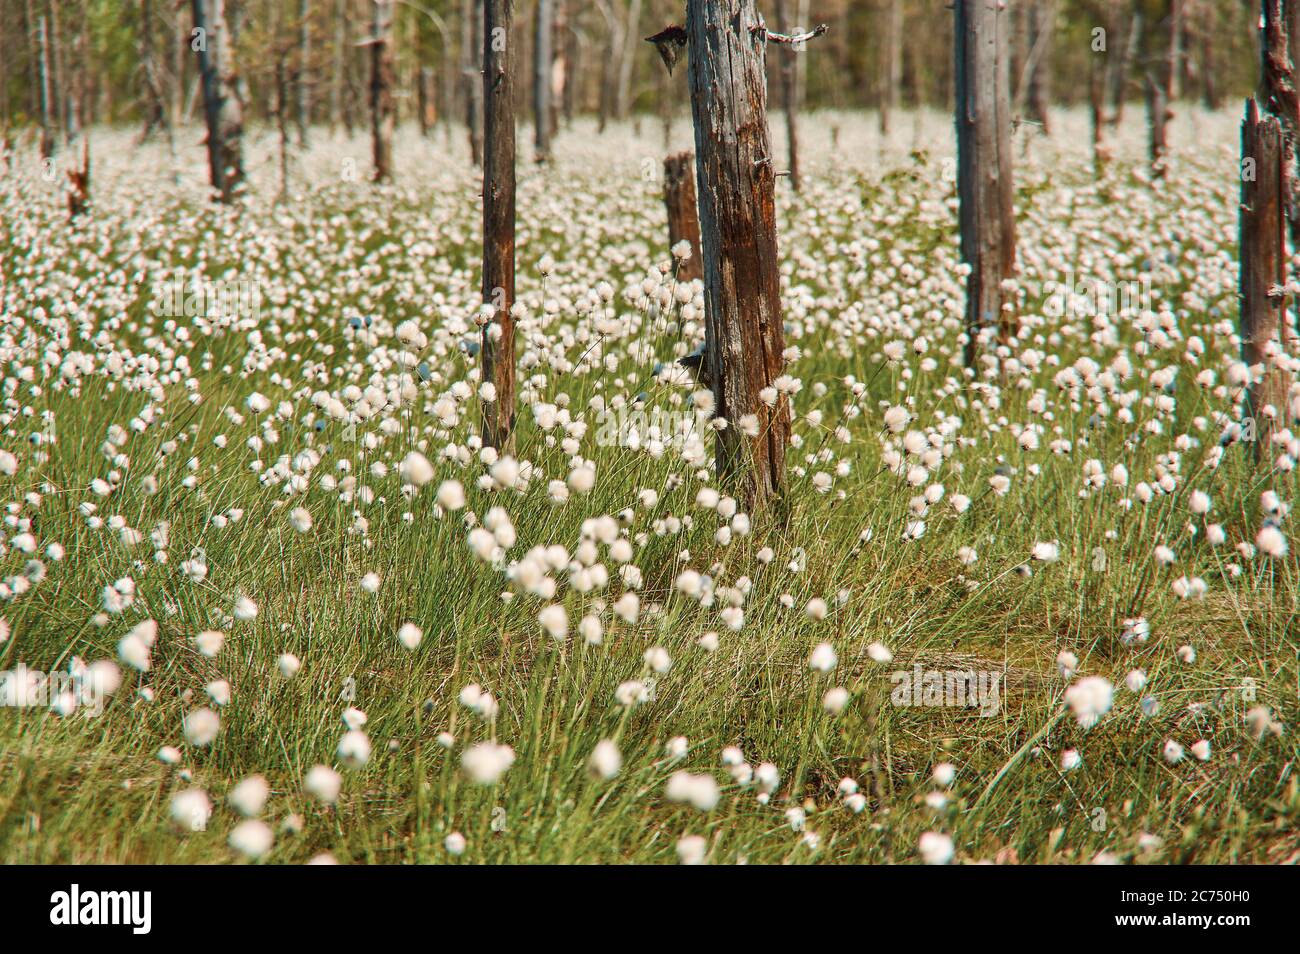 Arctic cottongrass, Eriophorum callitrix, perennial Arctic plant in the sedge family, Cyperaceae Stock Photo